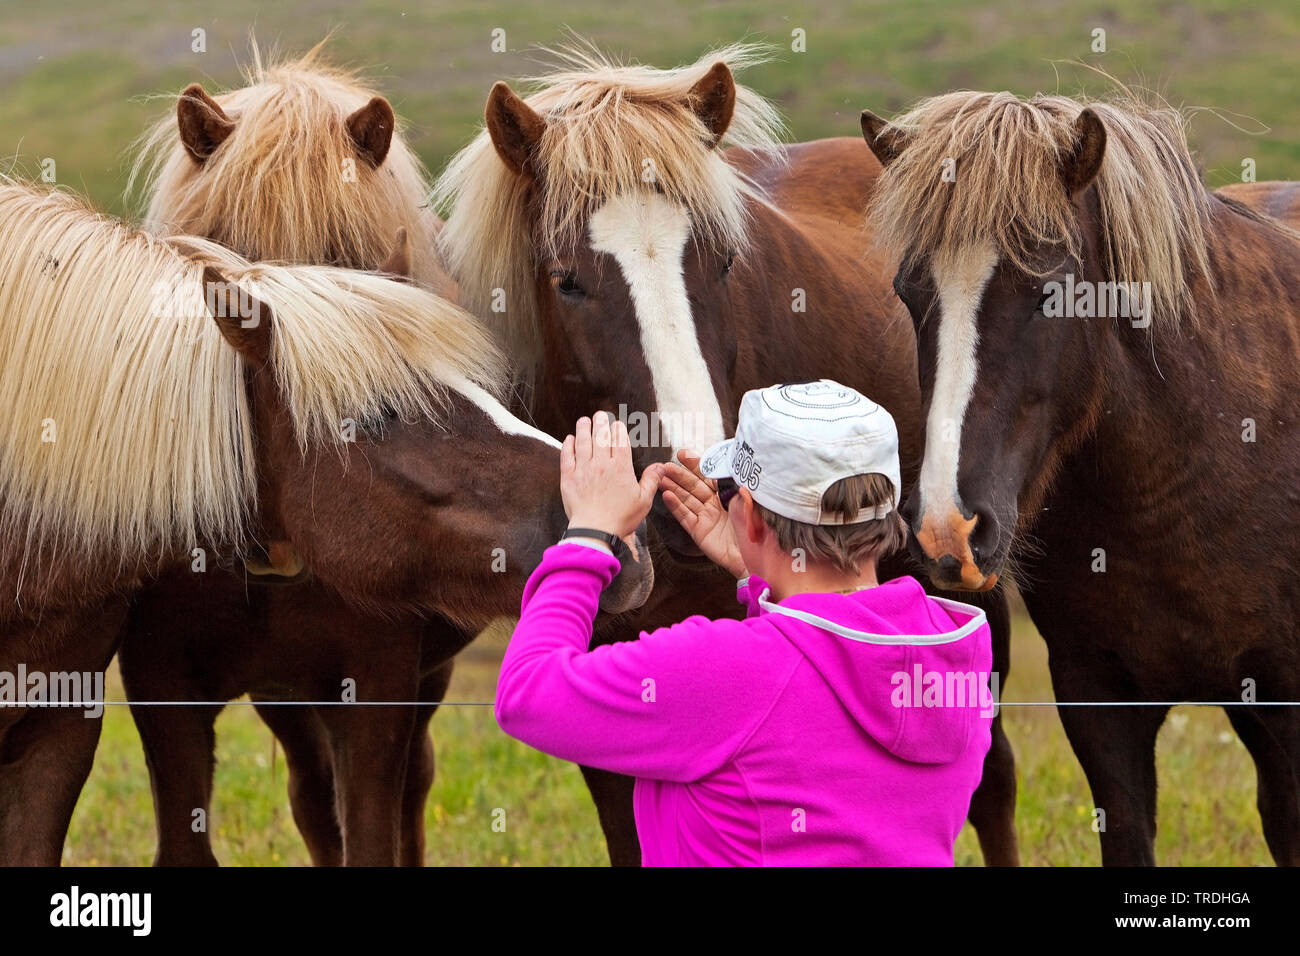 Islandic Horse, cheval islandais, Islande pony (Equus przewalskii f. caballus), chevaux Islandic nez curieusement à une femme à la clôture de pâturage, l'Islande Banque D'Images